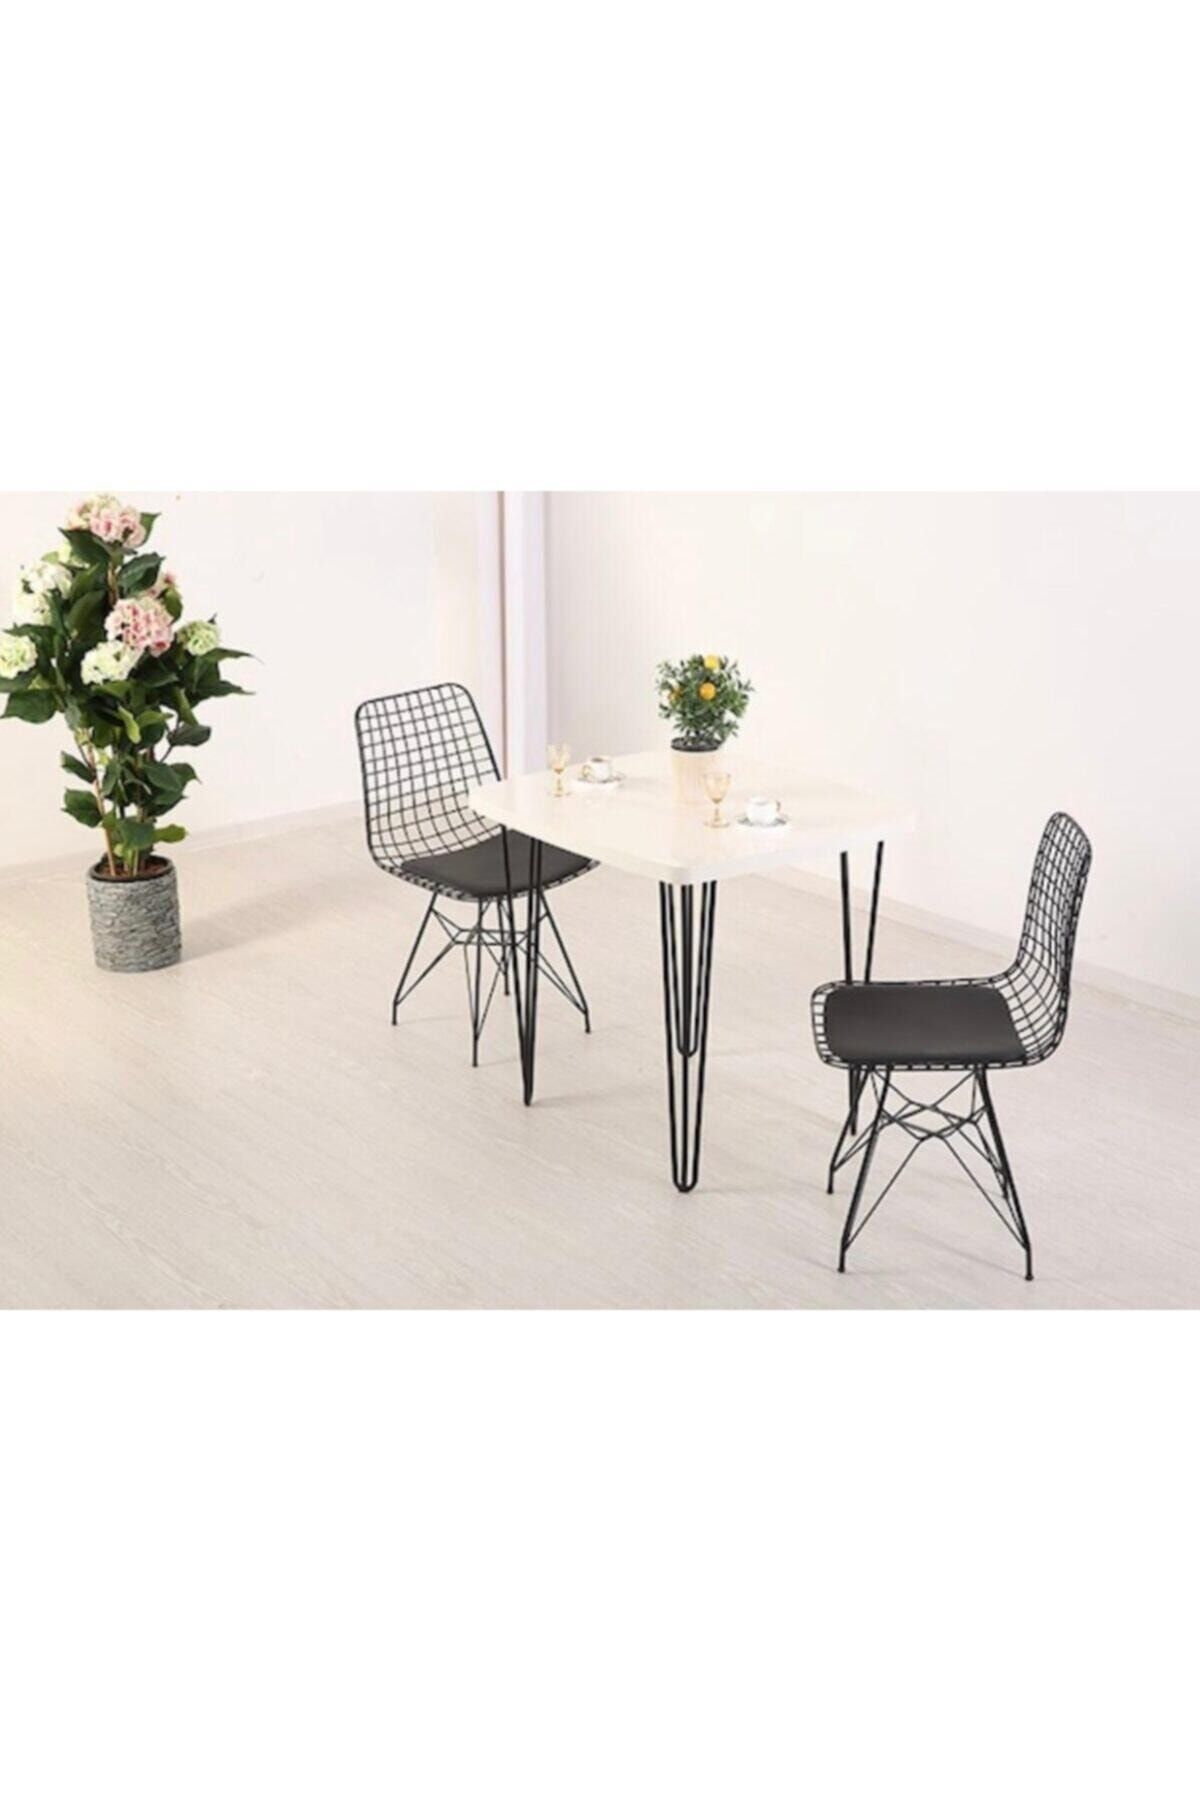 Cosargroup Beyaz 60x70 Firkete Masa Sandalye Takımı 1 Masa 2 Sandalye Seti